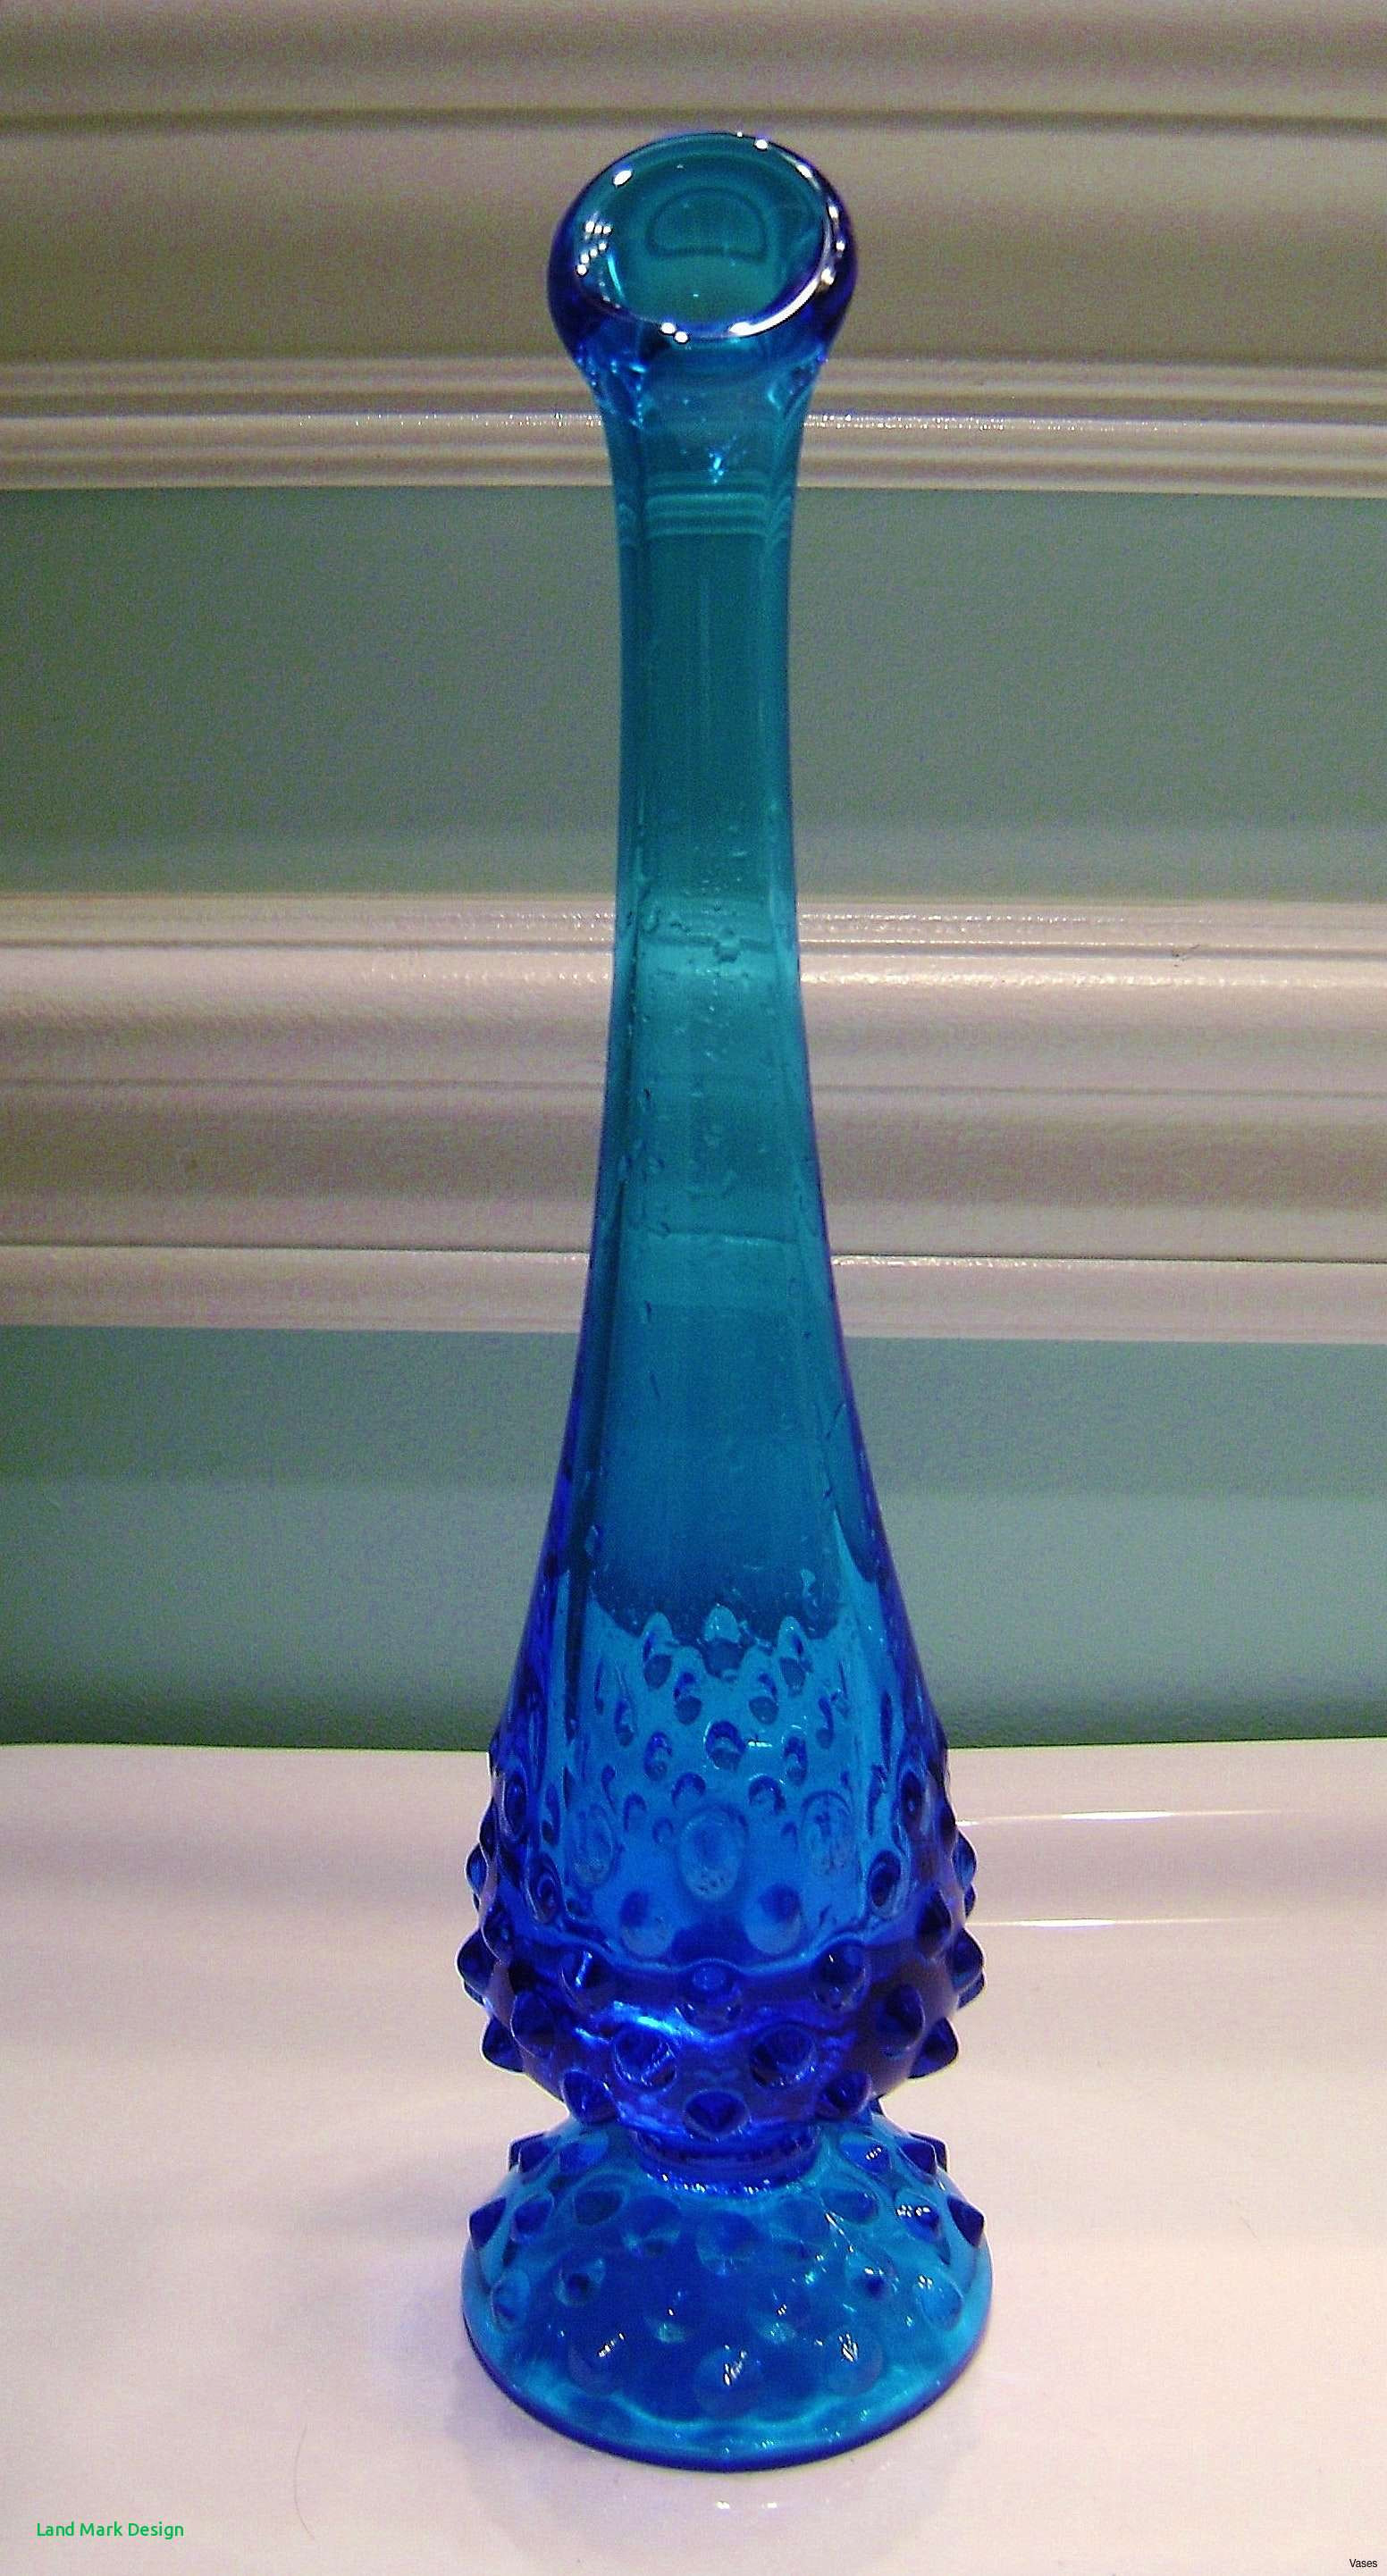 cobalt blue vases antique of blue bud vases images fenton cobalt blue bud vase vases with regard to blue bud vases images light aqua color of blue bud vases images fenton cobalt blue bud